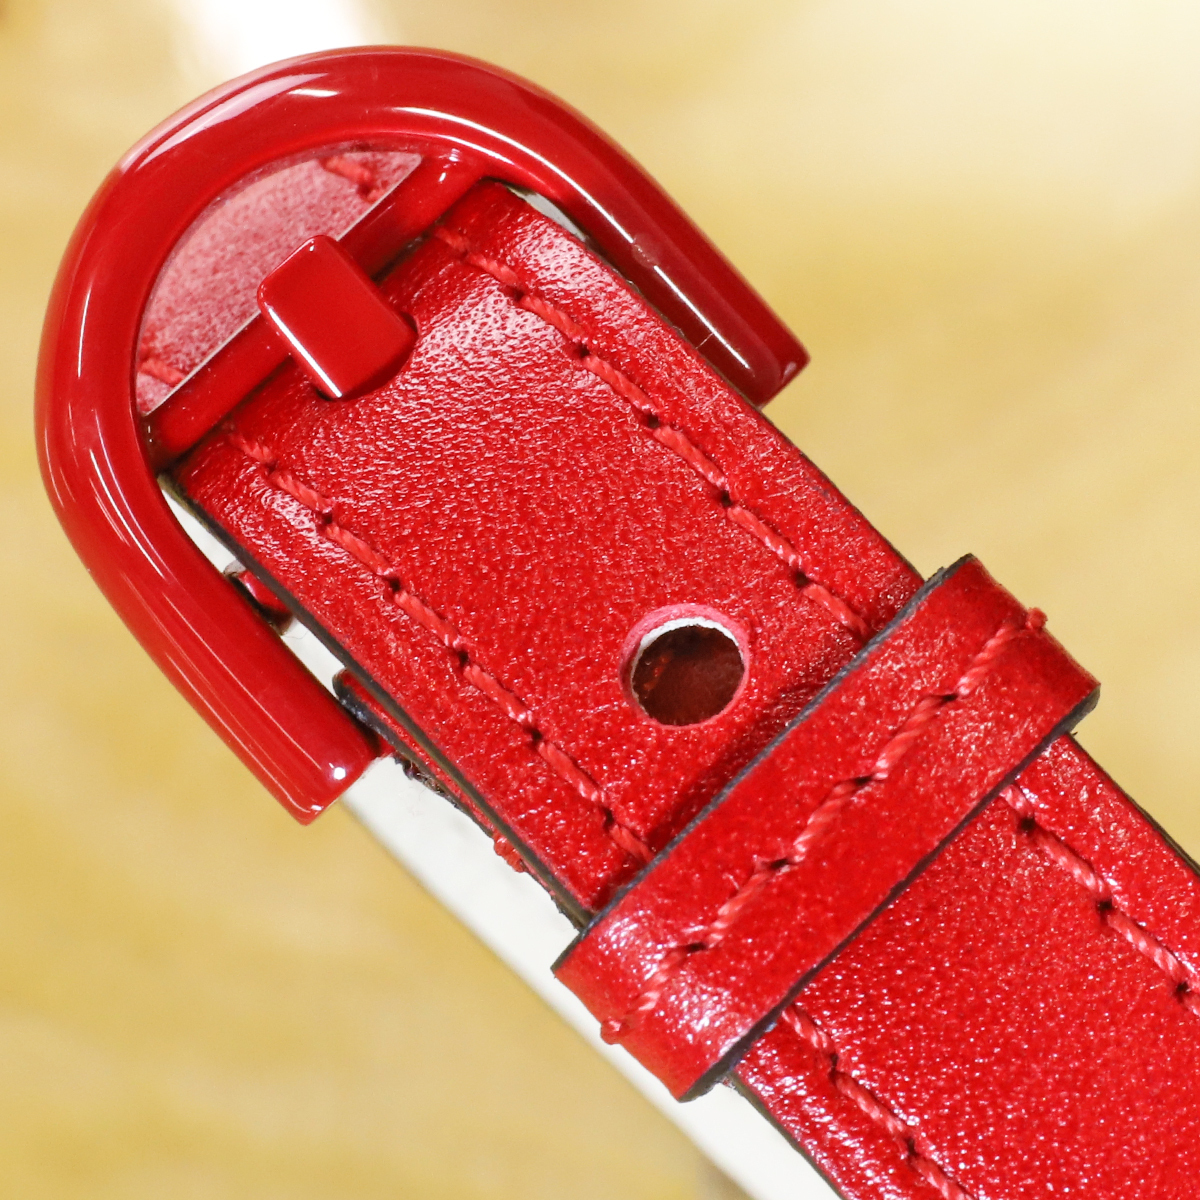  подлинный товар первоклассный товар Dell vo- высшее редкий 2014 RED MOON PARTY ограничение желтохвост yon кожа браслет браслет аксессуары DELVAUX BRILLANT